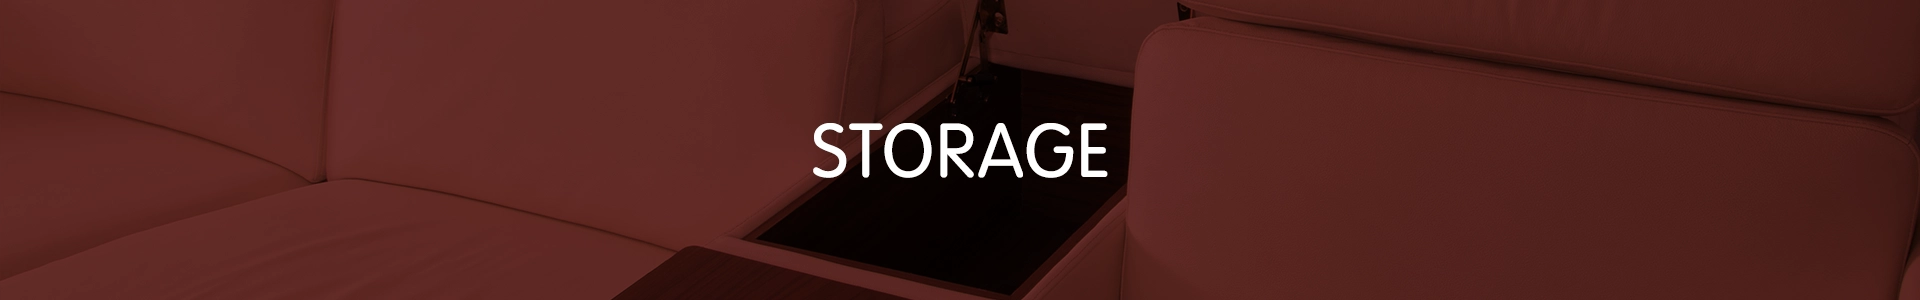 Recliner Storage Accessories